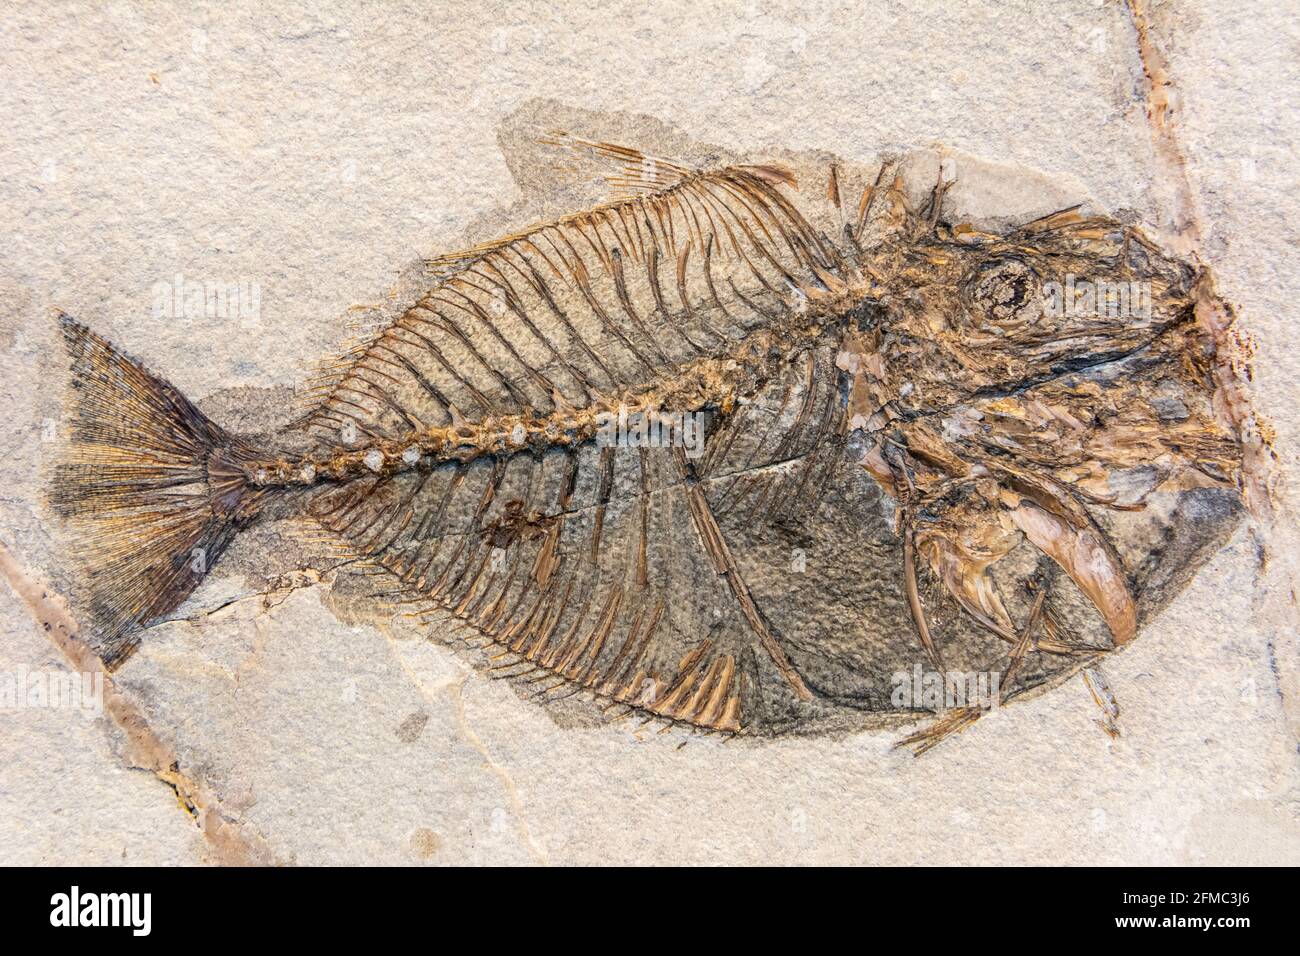 Fossil von Vomeropsis triurus, einer ausgestorbenen Gattung prähistorischer Knochenfische, die vom frühen bis mittleren Eozän lebten. Stockfoto